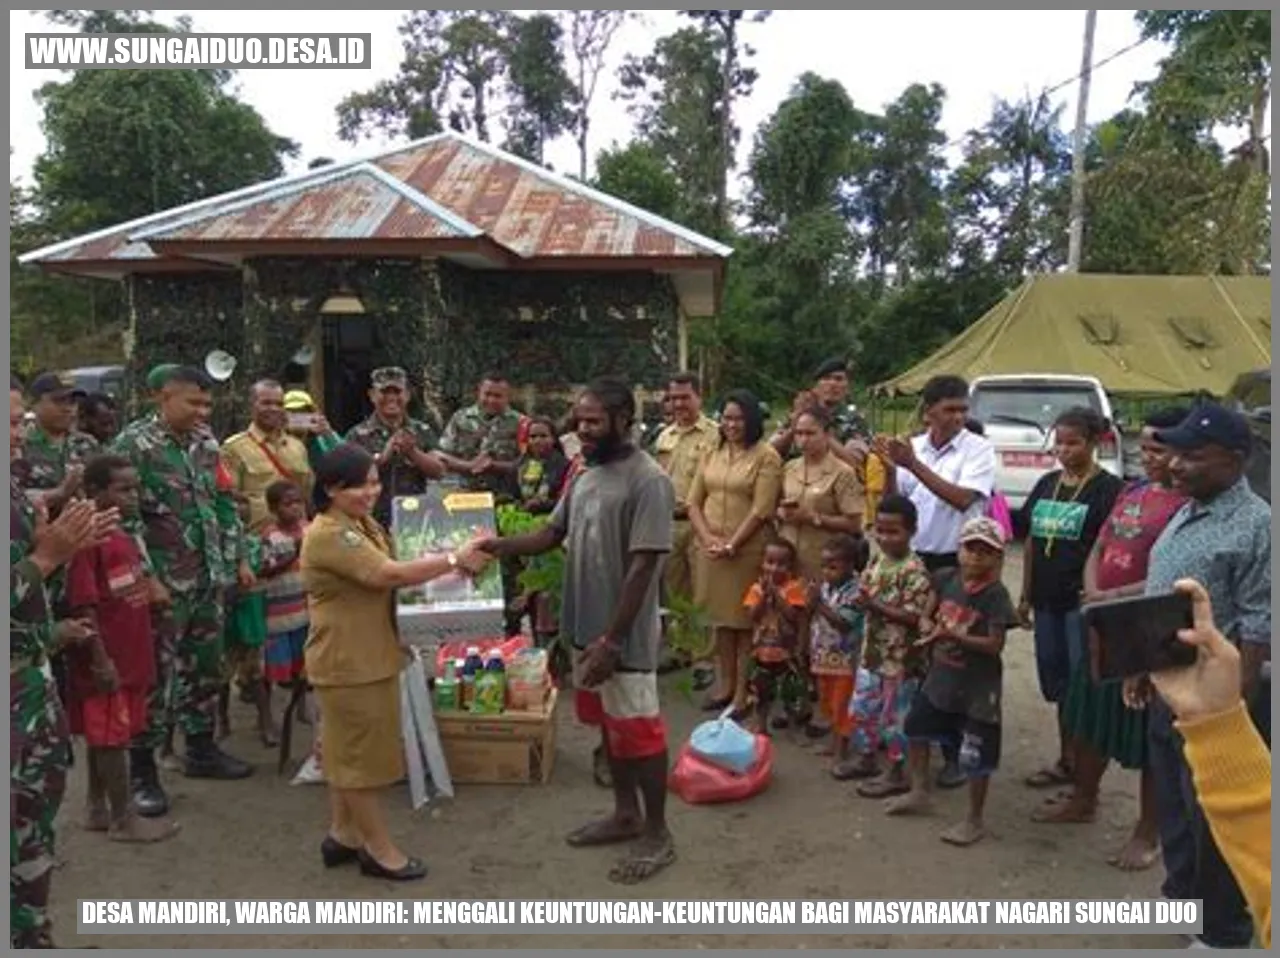 Desa Mandiri, Warga Mandiri: Menggali Keuntungan-Keuntungan bagi Masyarakat Nagari Sungai Duo